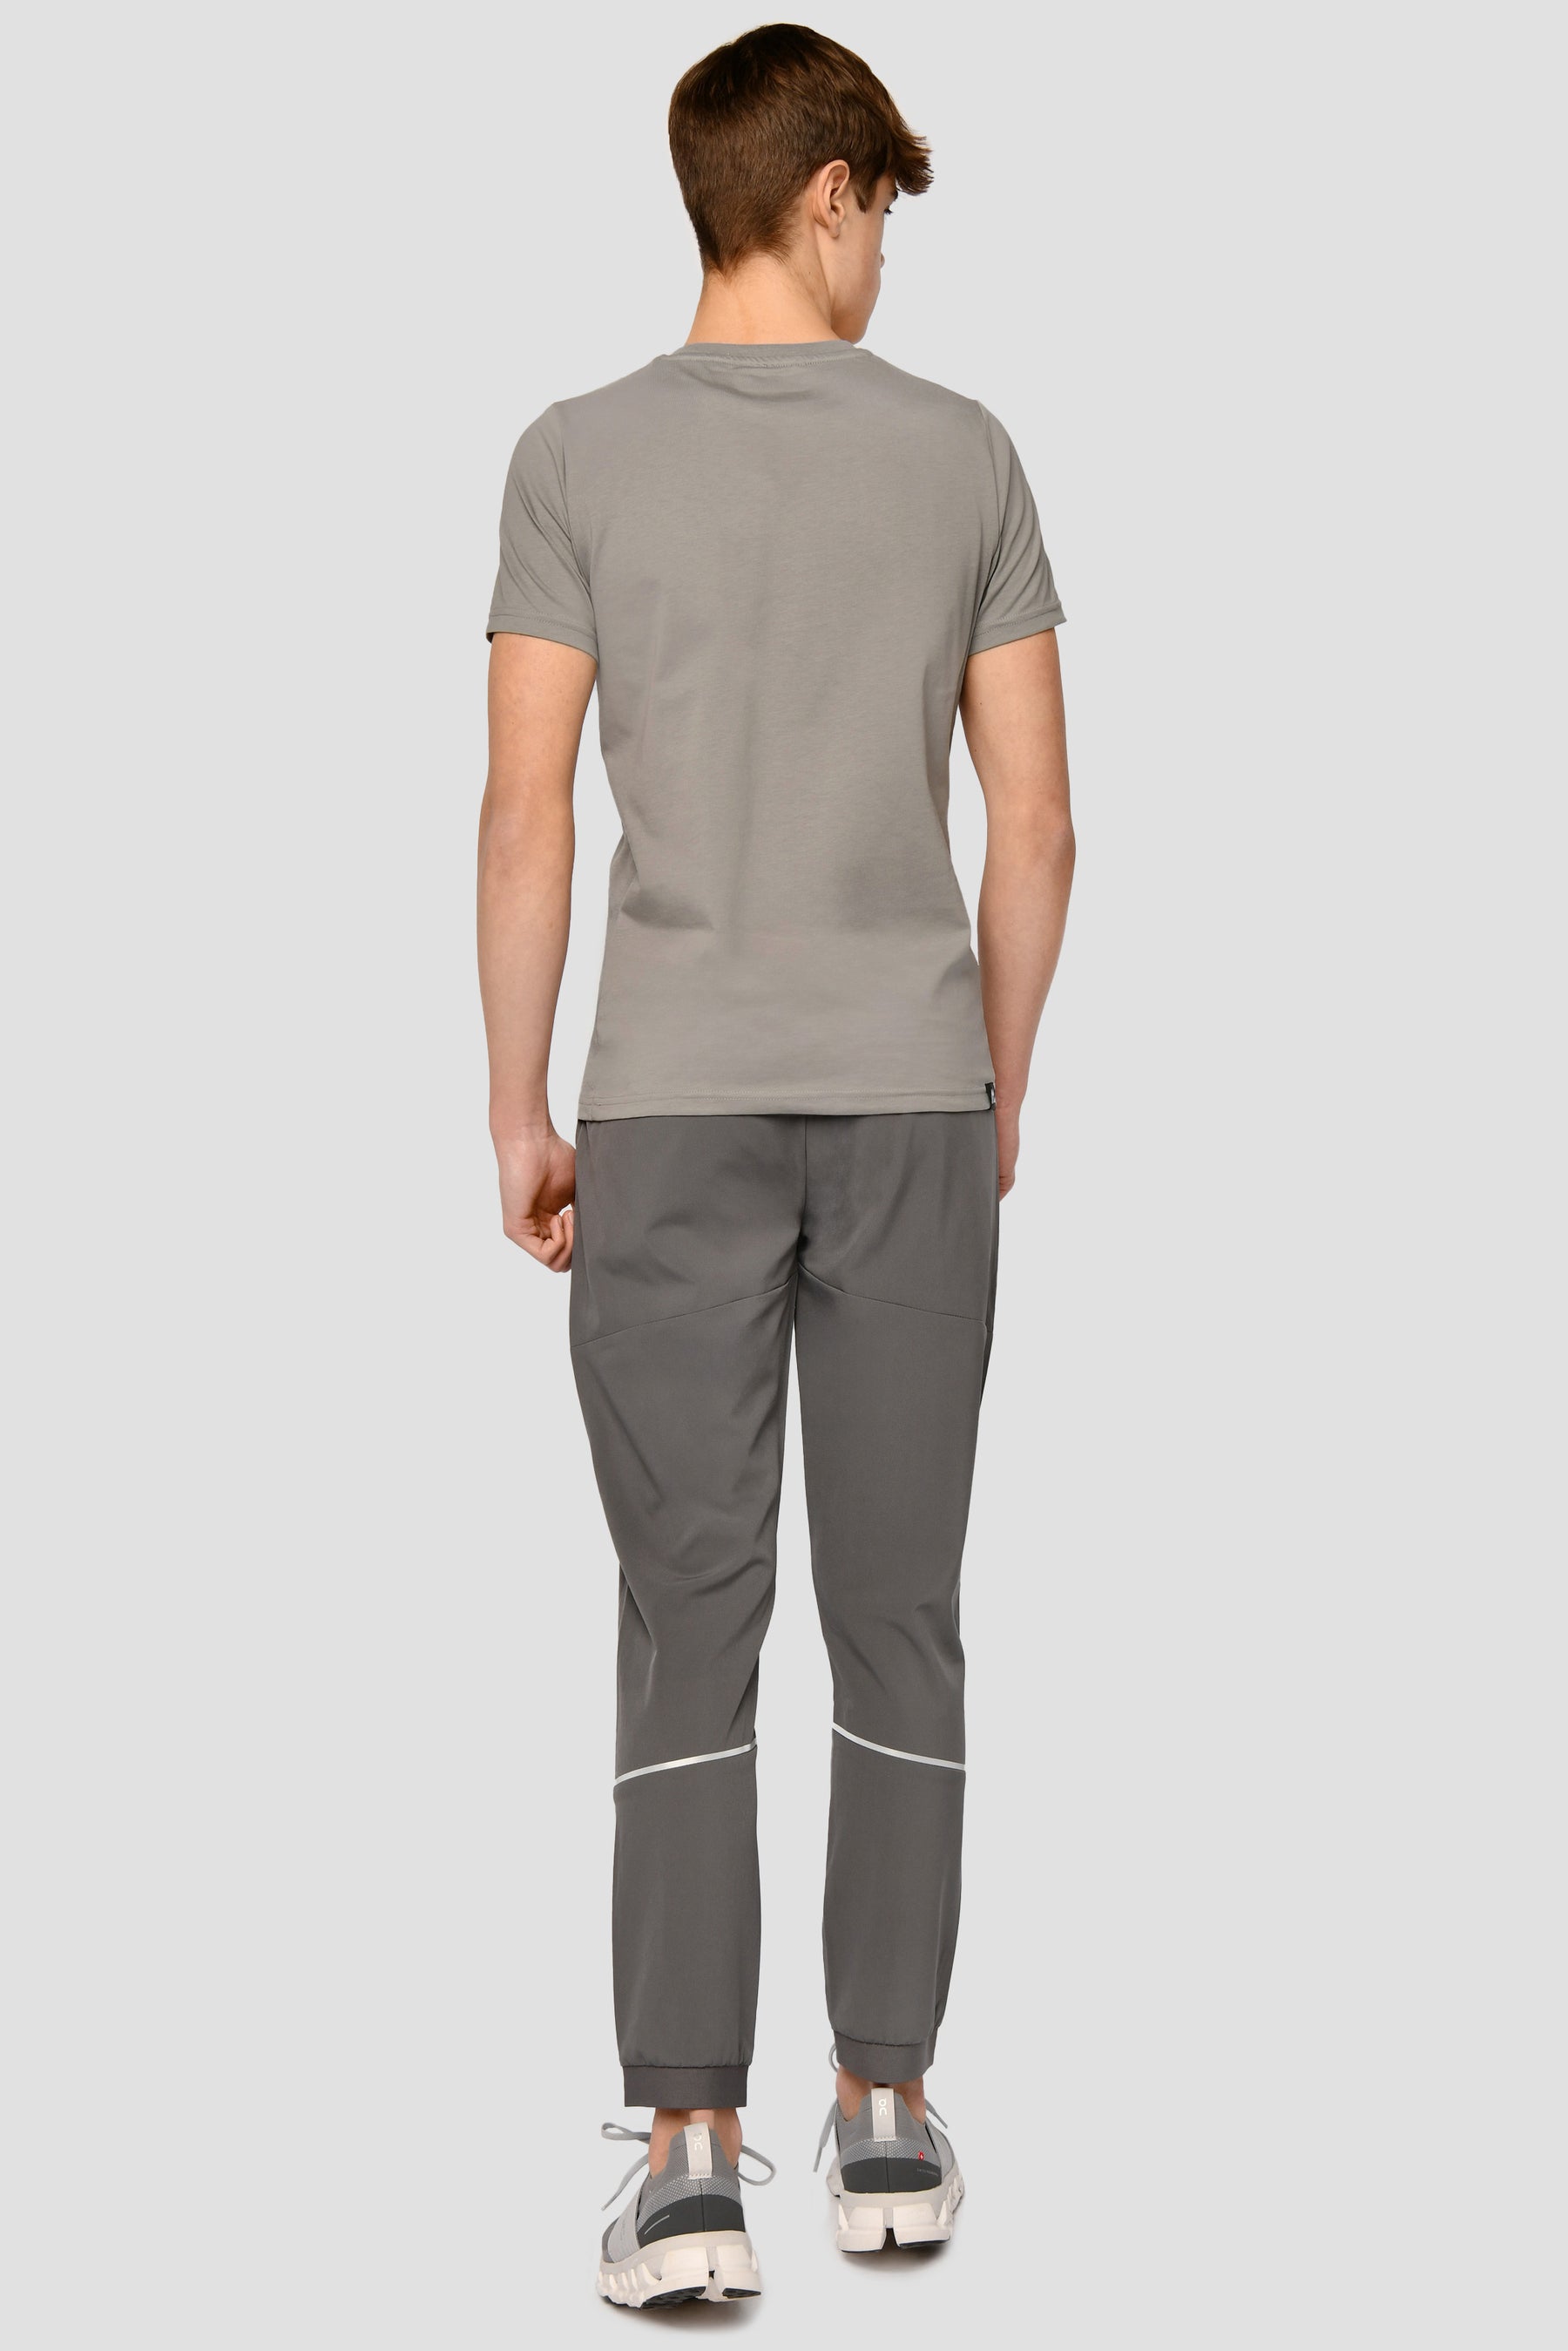 Digi Camo Box T-Shirt - Platinum Grey